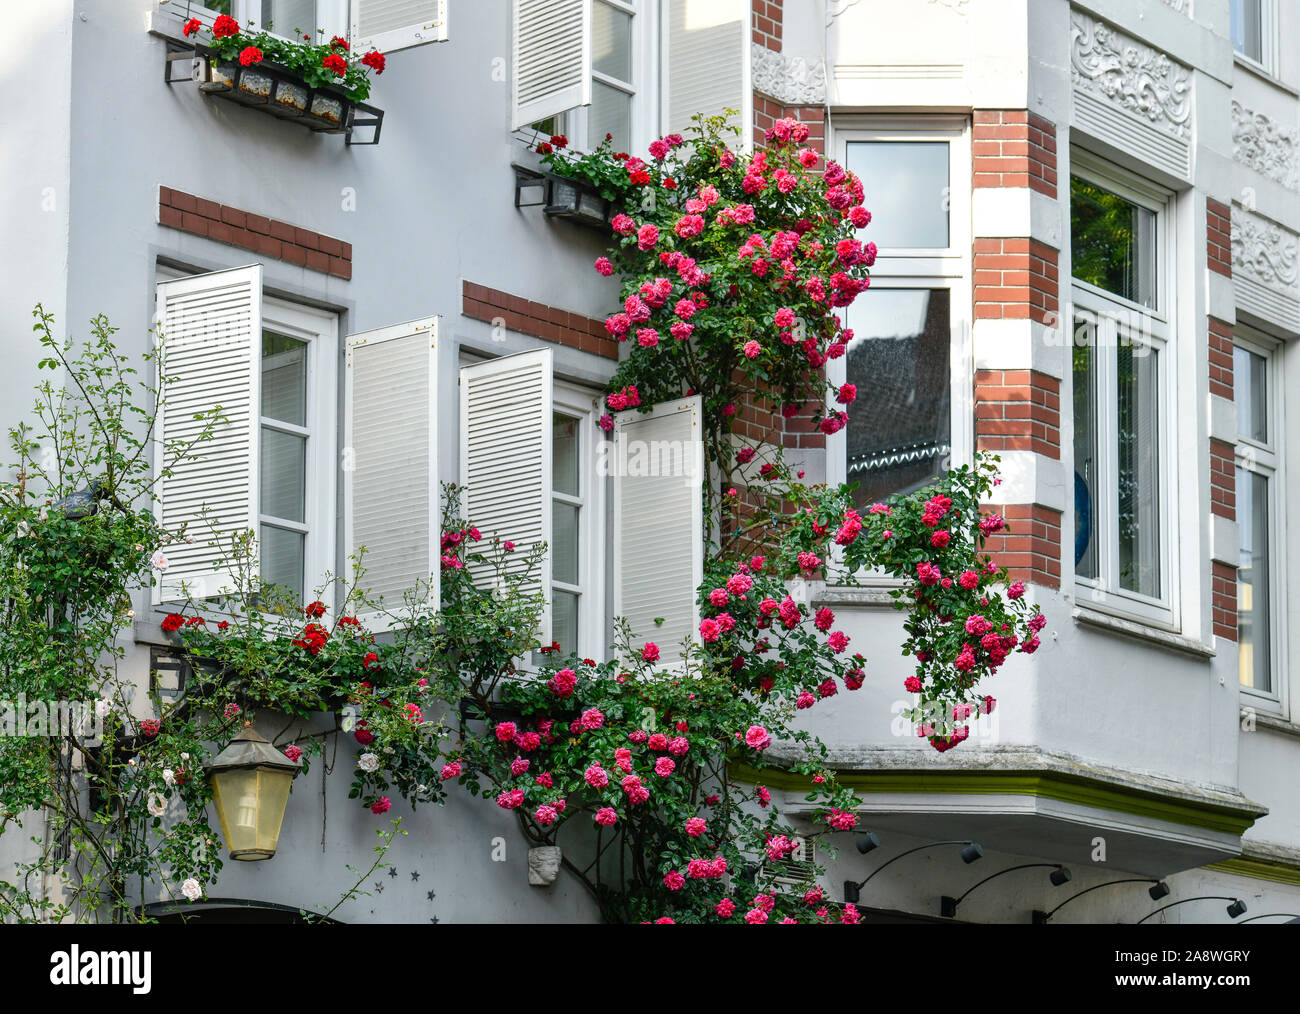 Rosen, Hausfassaden, Hohe Straße, Schnoorviertel, Brema, Deutschland Foto Stock